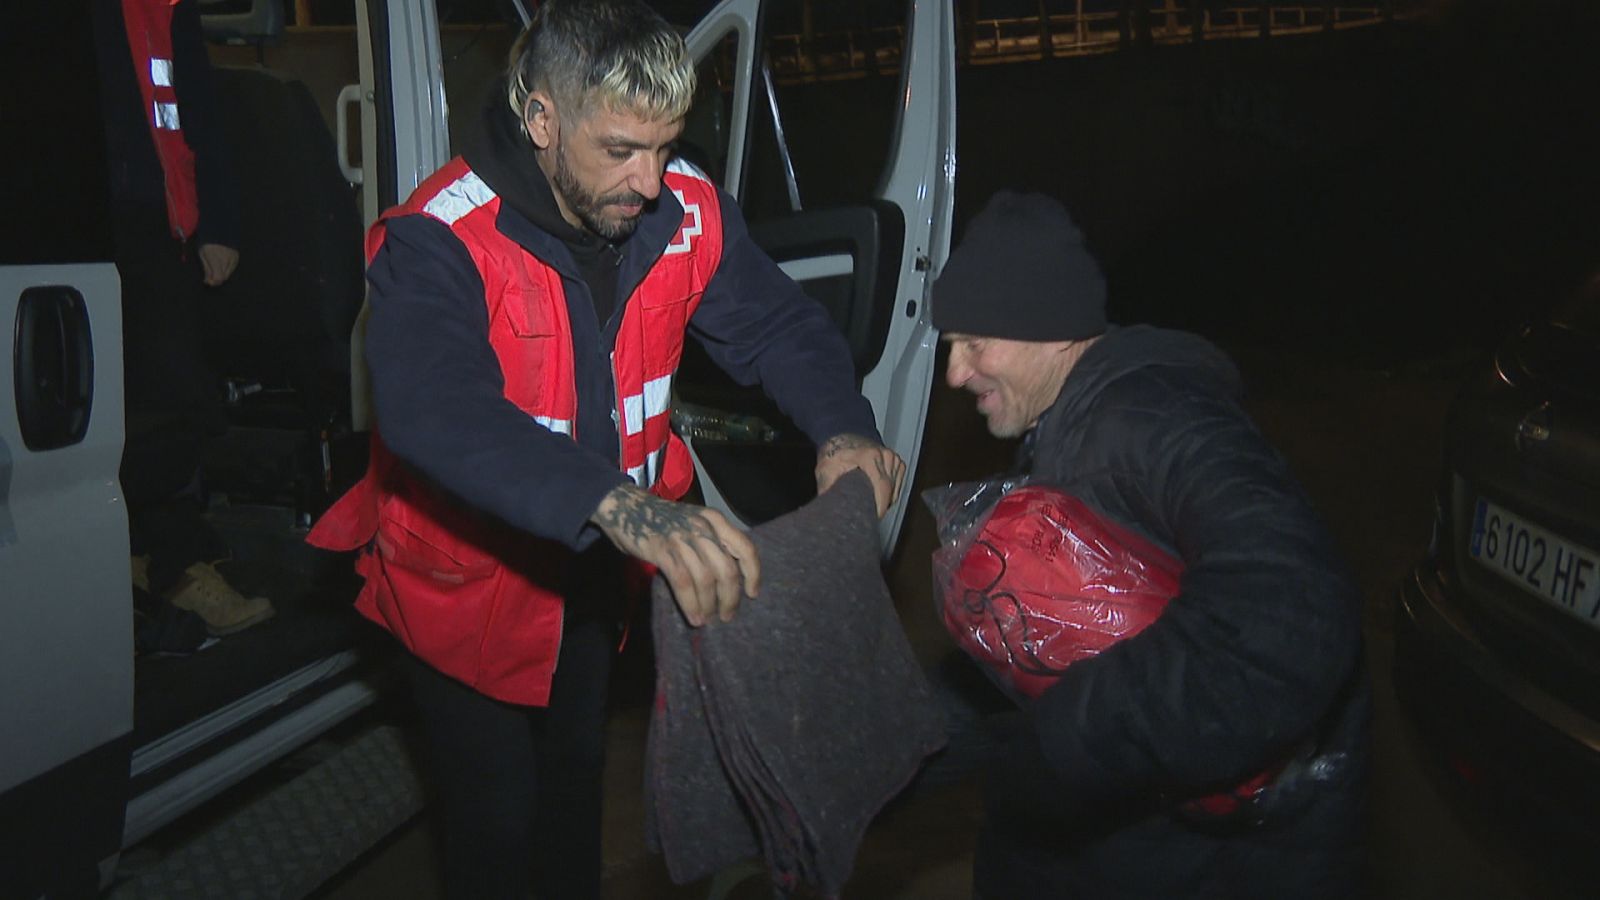 Un treballador de Creu Roja ofereix una manta a un home sense sostre